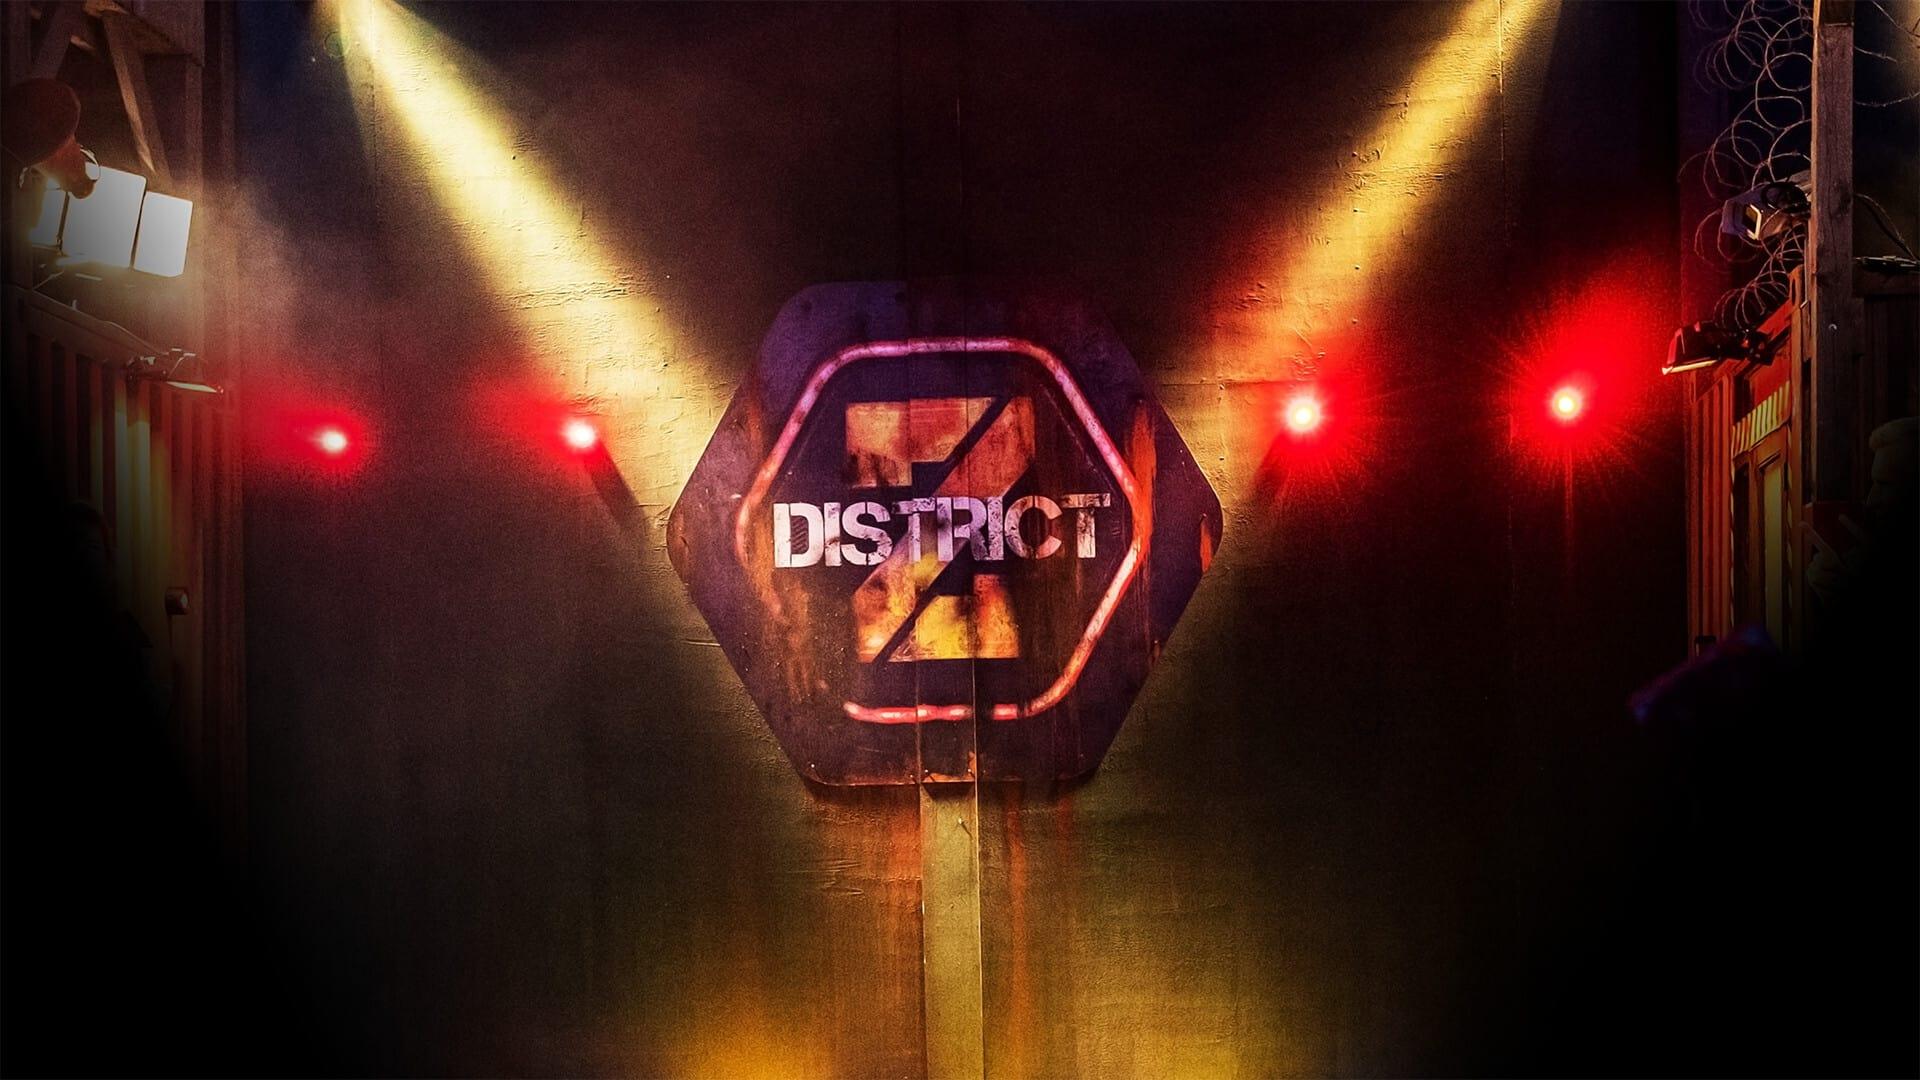 District Z backdrop